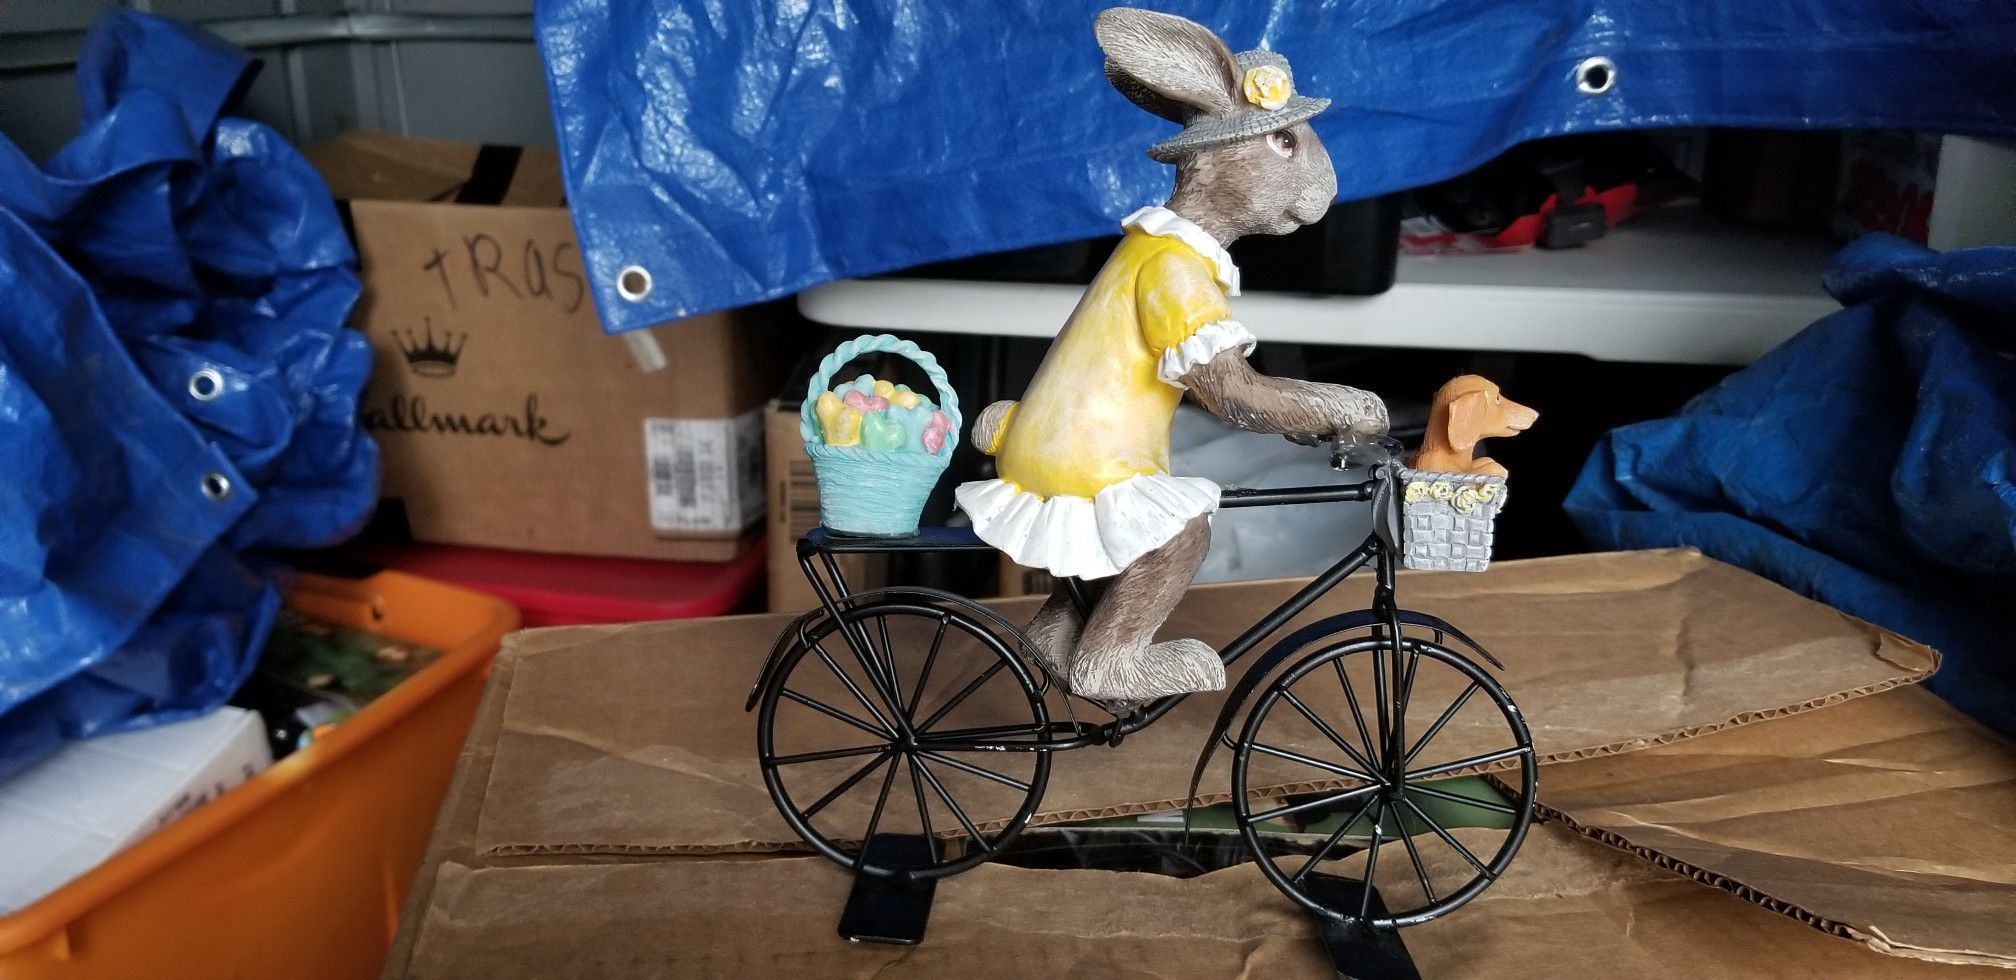 Bunny on bicycle